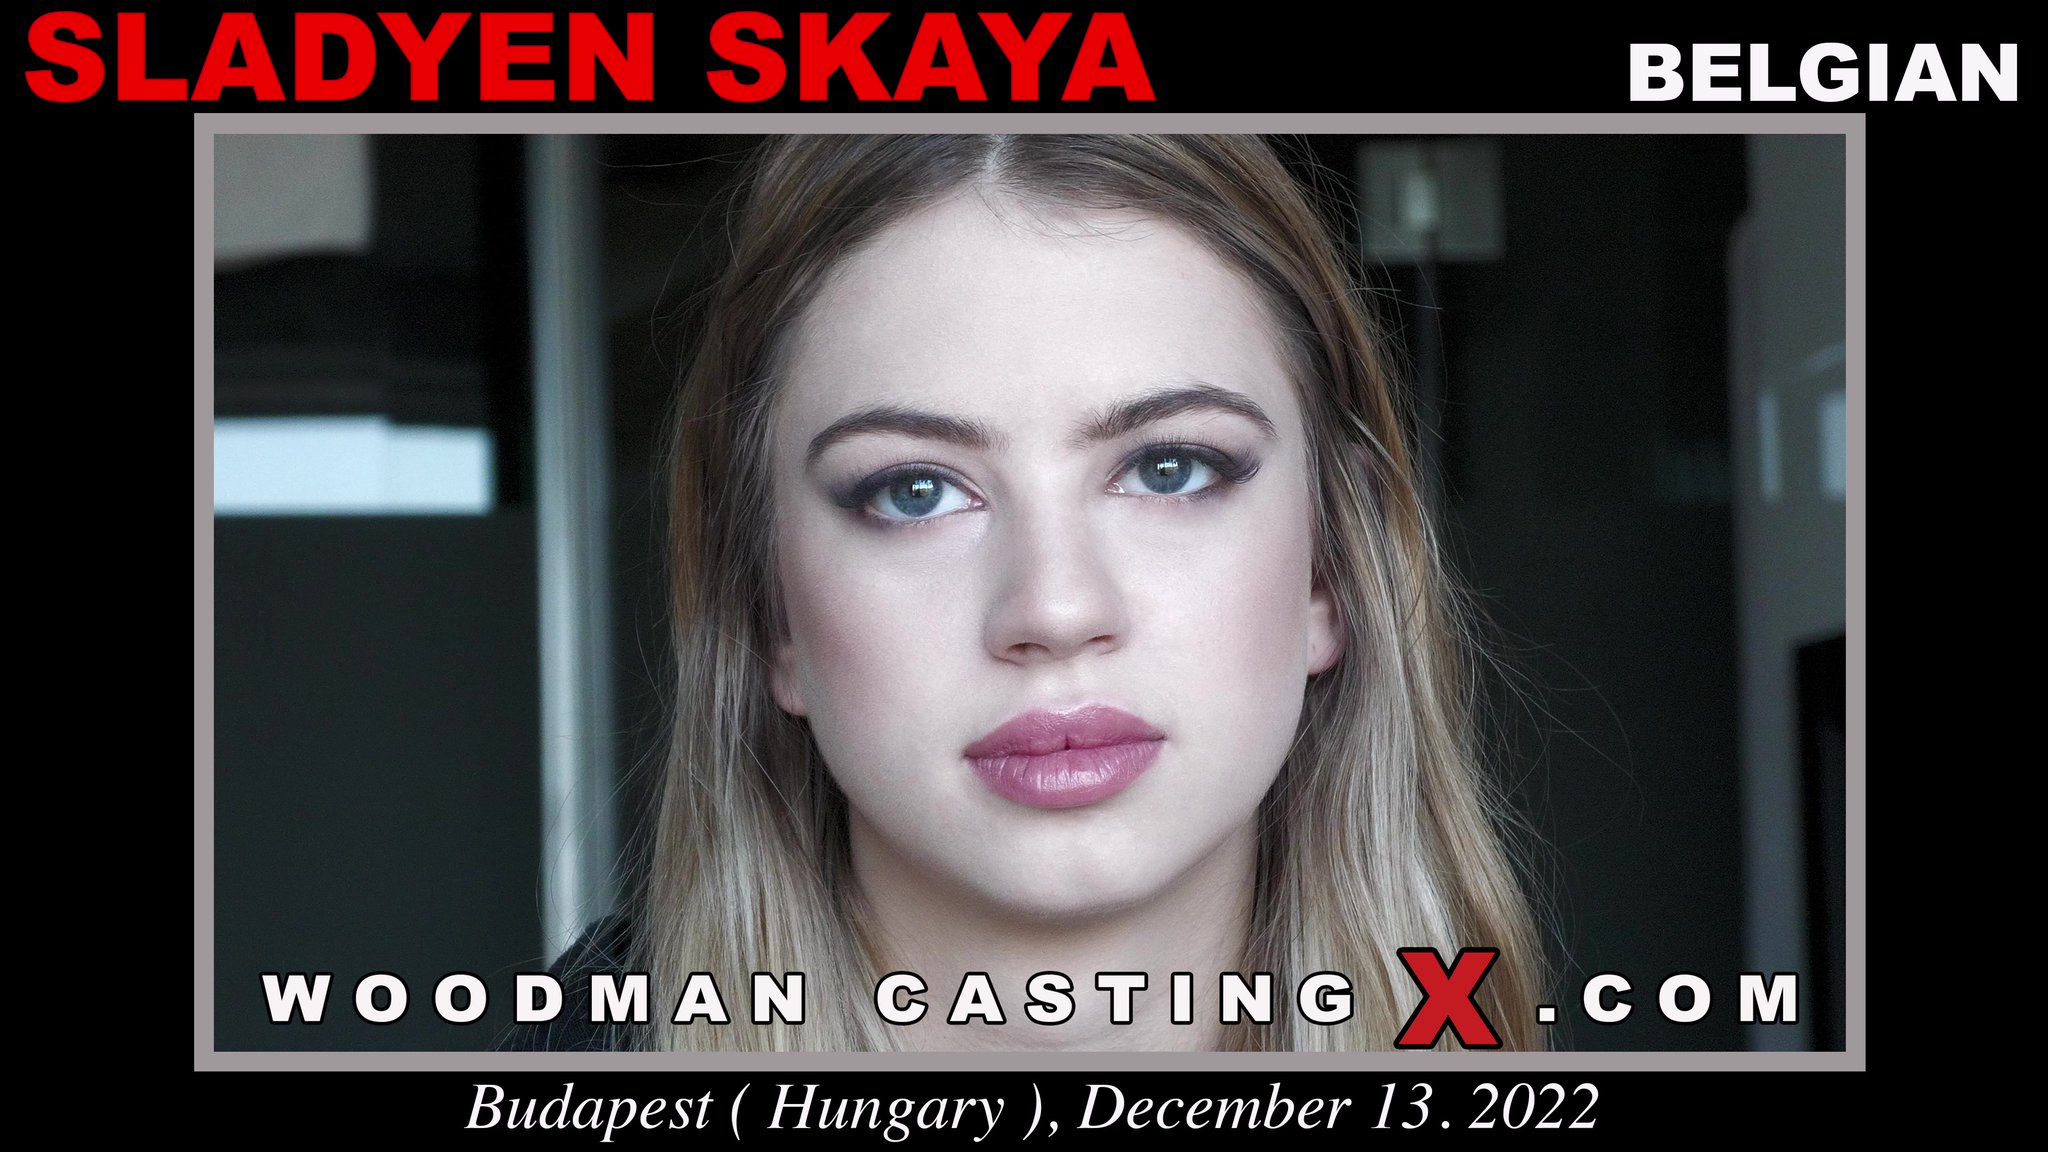 Woodman Casting X on X: [New Video] Sladyen Skaya t.cot87LEnt2yw  t.coSZ6MSjeuqU  X